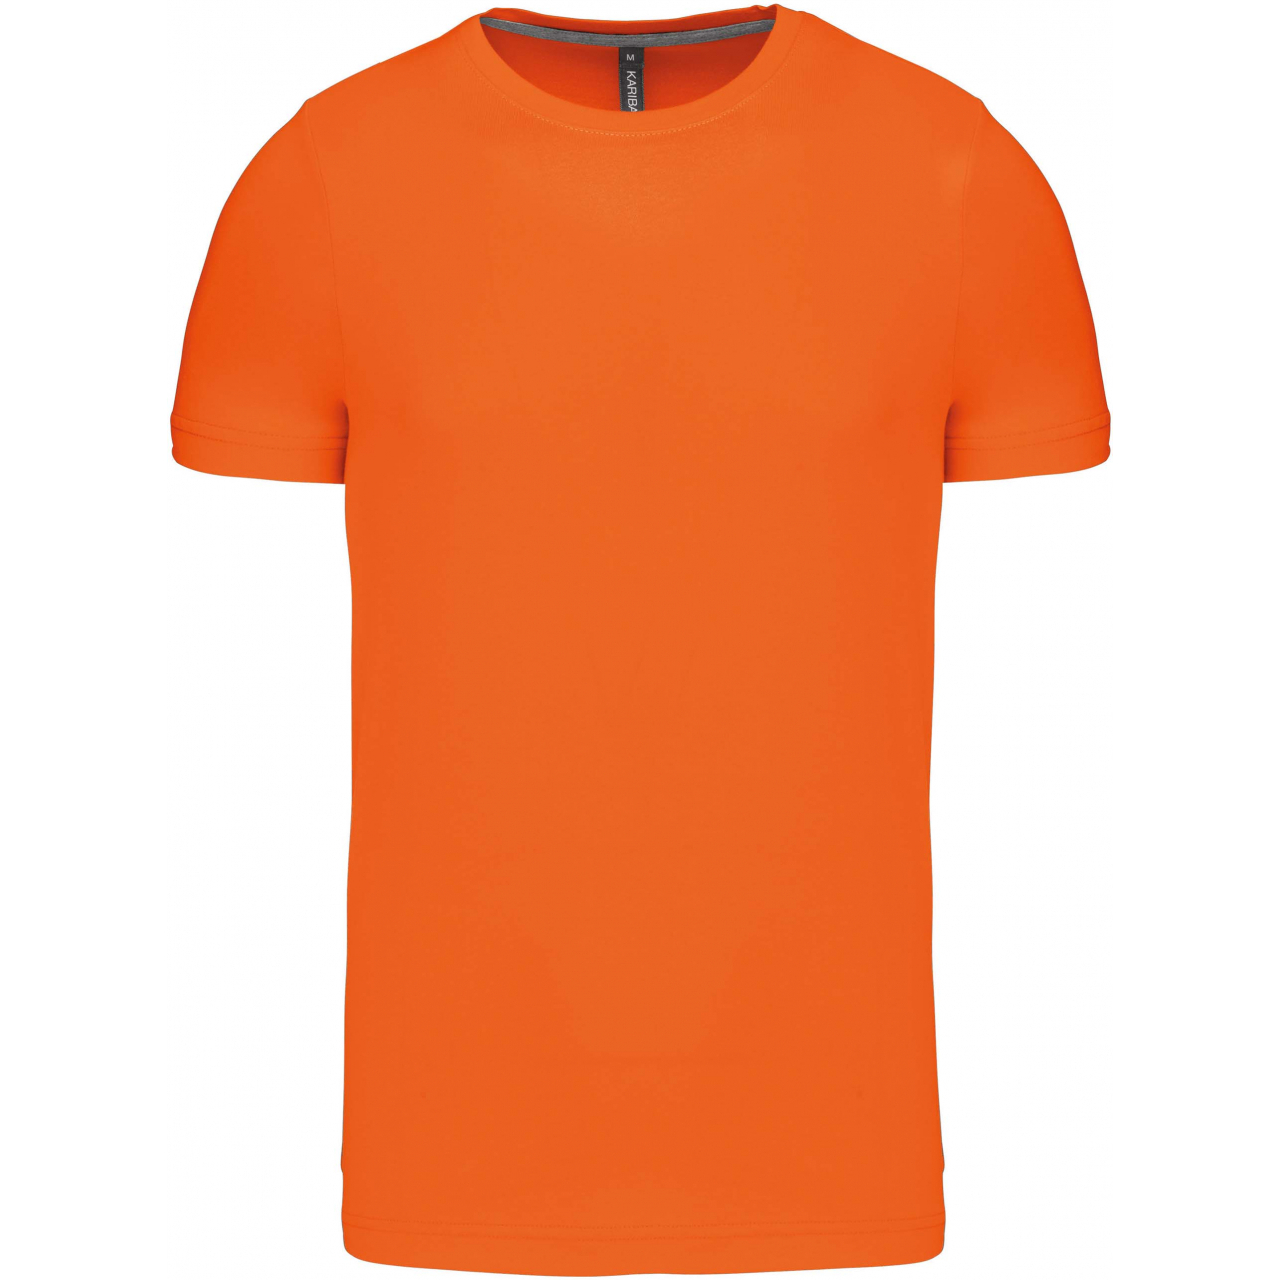 Pánské tričko Kariban krátký rukáv - oranžové, L